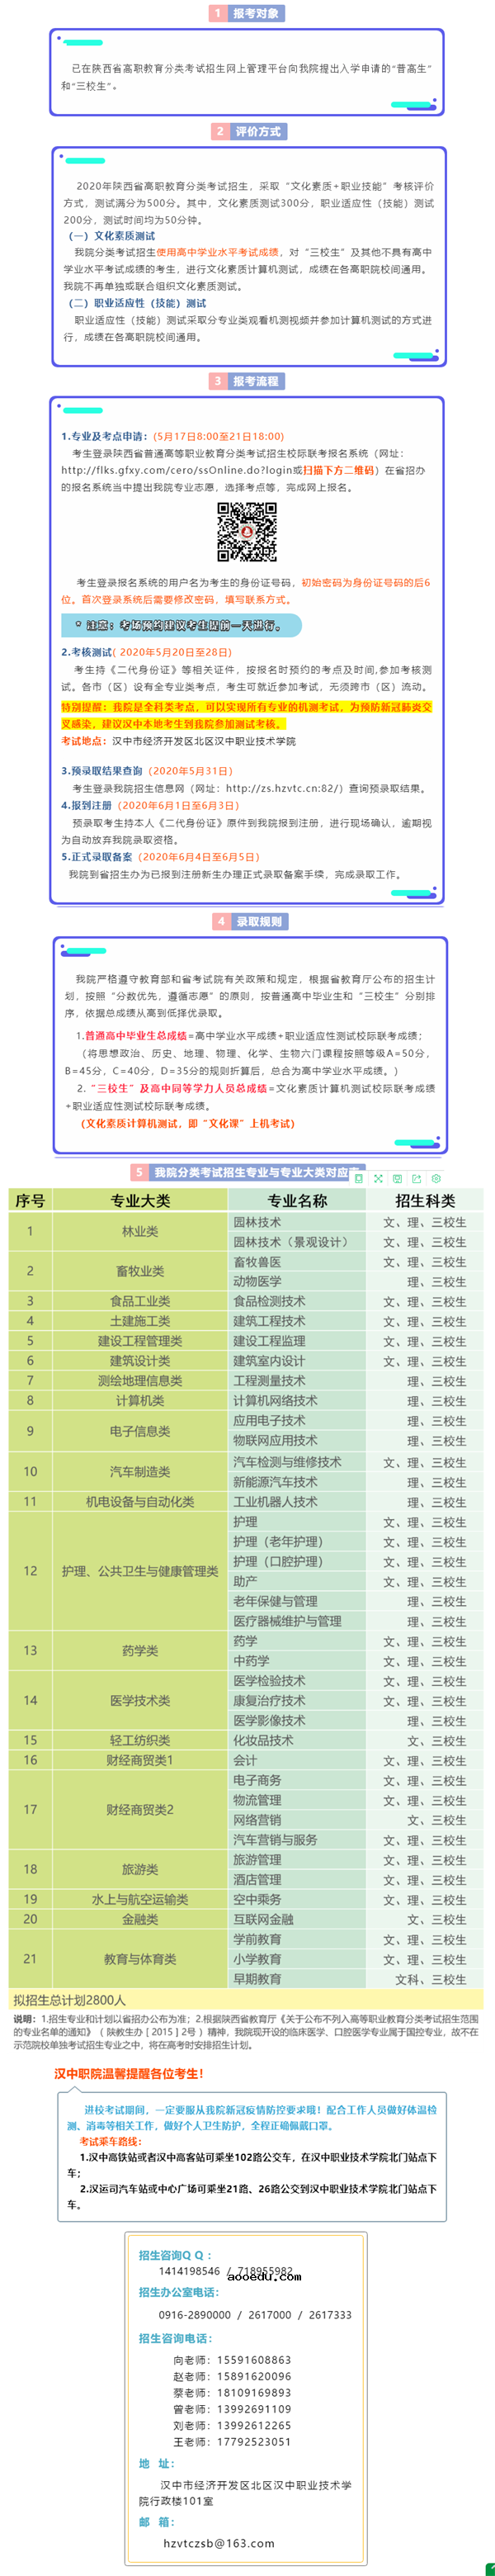 2020汉中职业技术学院分类考试招生简章